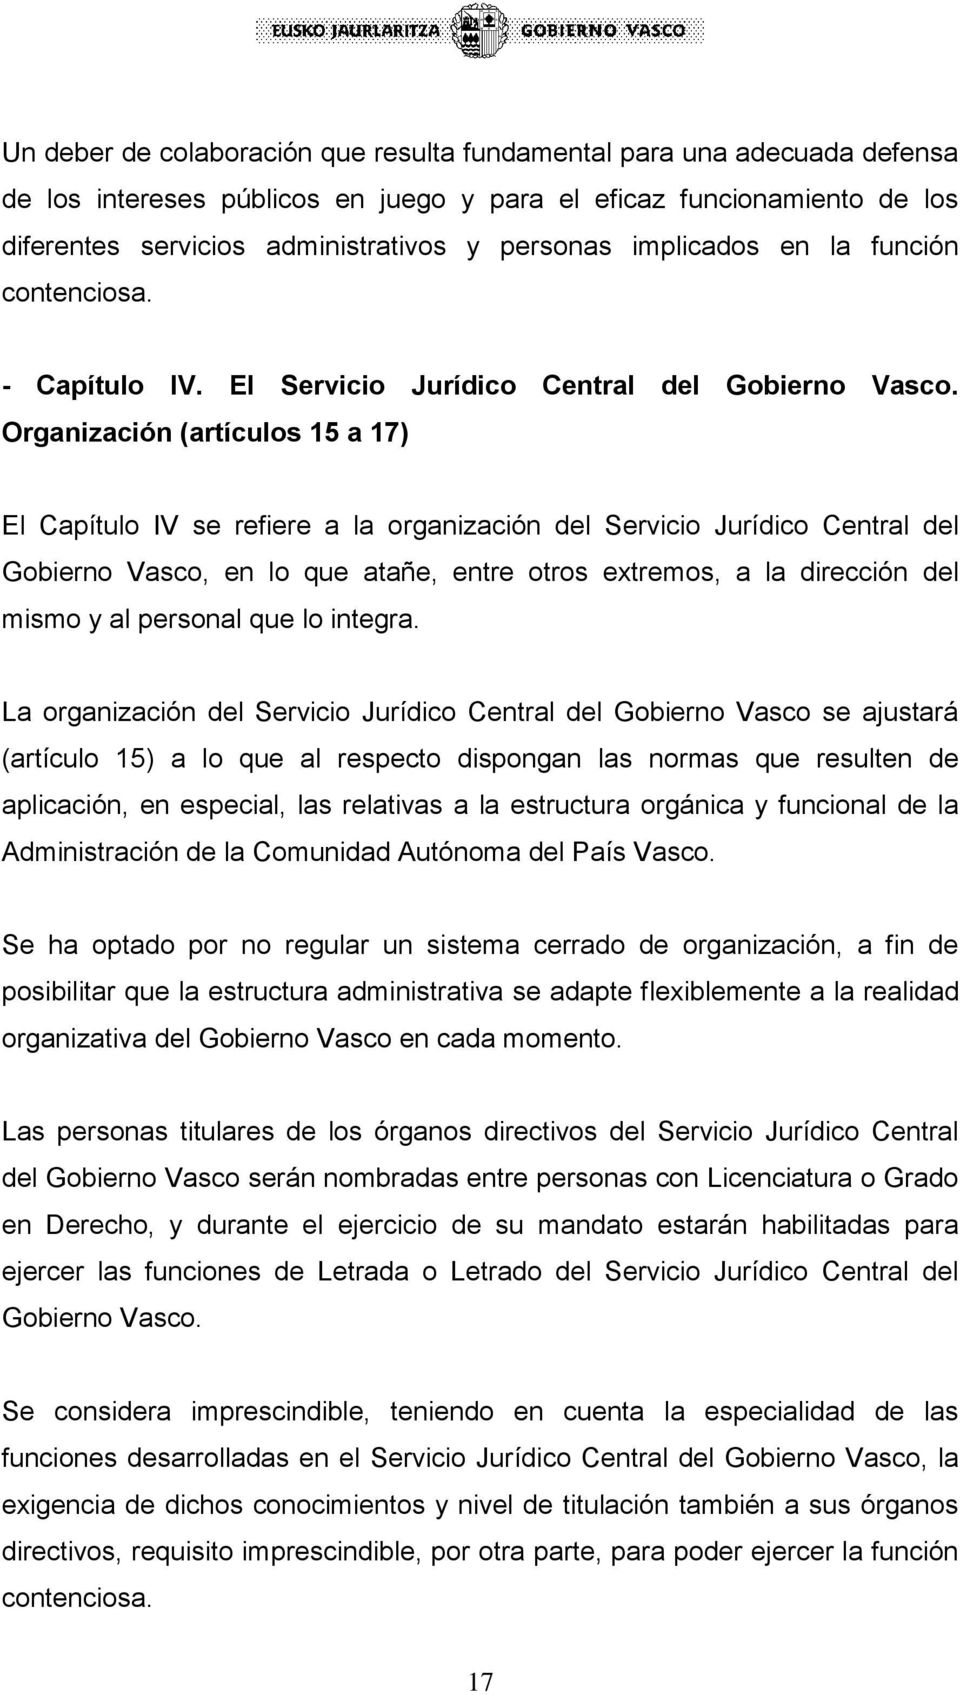 Organización (artículos 15 a 17) El Capítulo IV se refiere a la organización del Servicio Jurídico Central del Gobierno Vasco, en lo que atañe, entre otros extremos, a la dirección del mismo y al